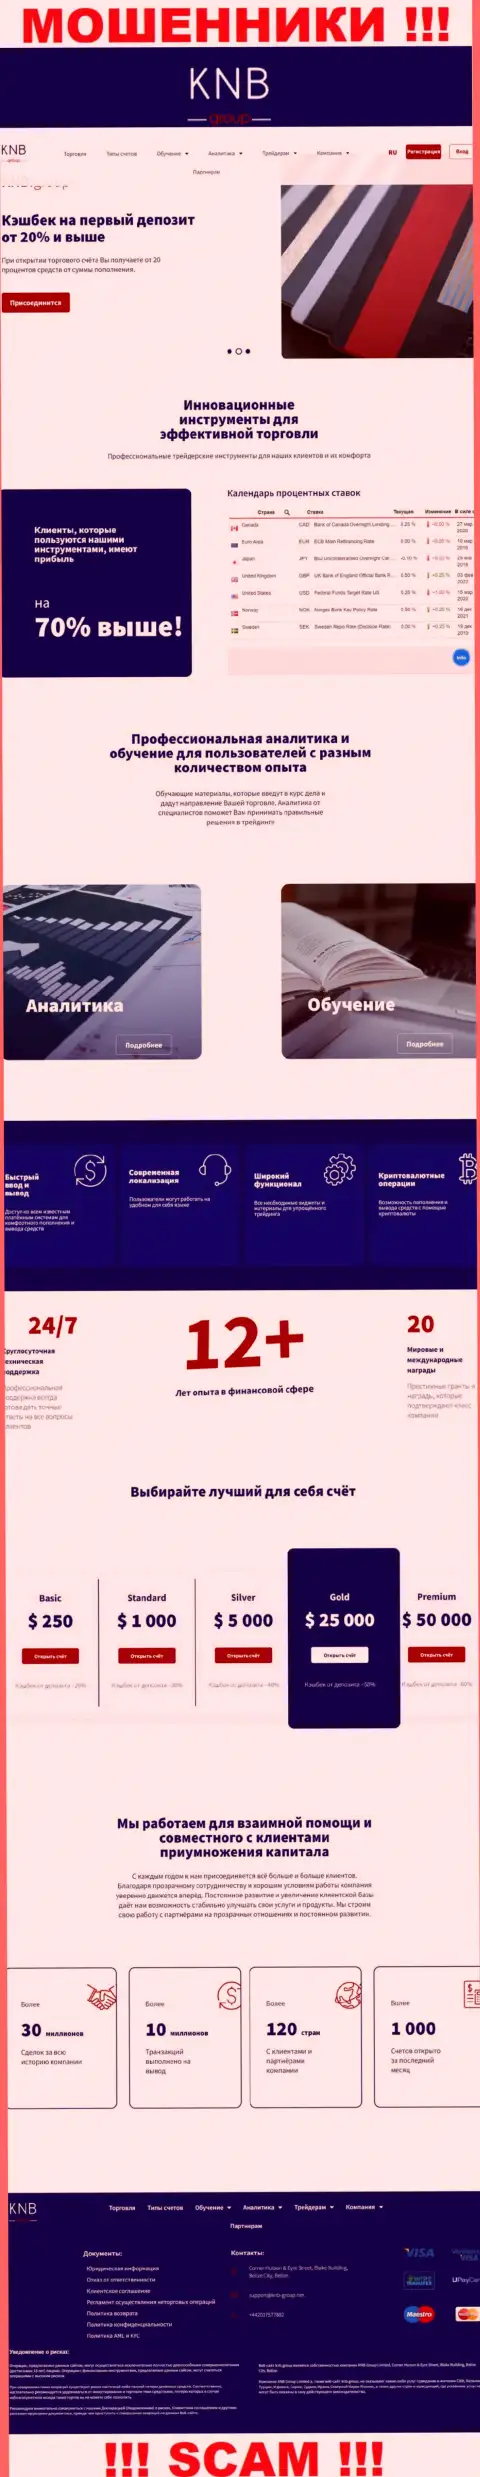 Обзор официального сайта шулеров КНБГрупп